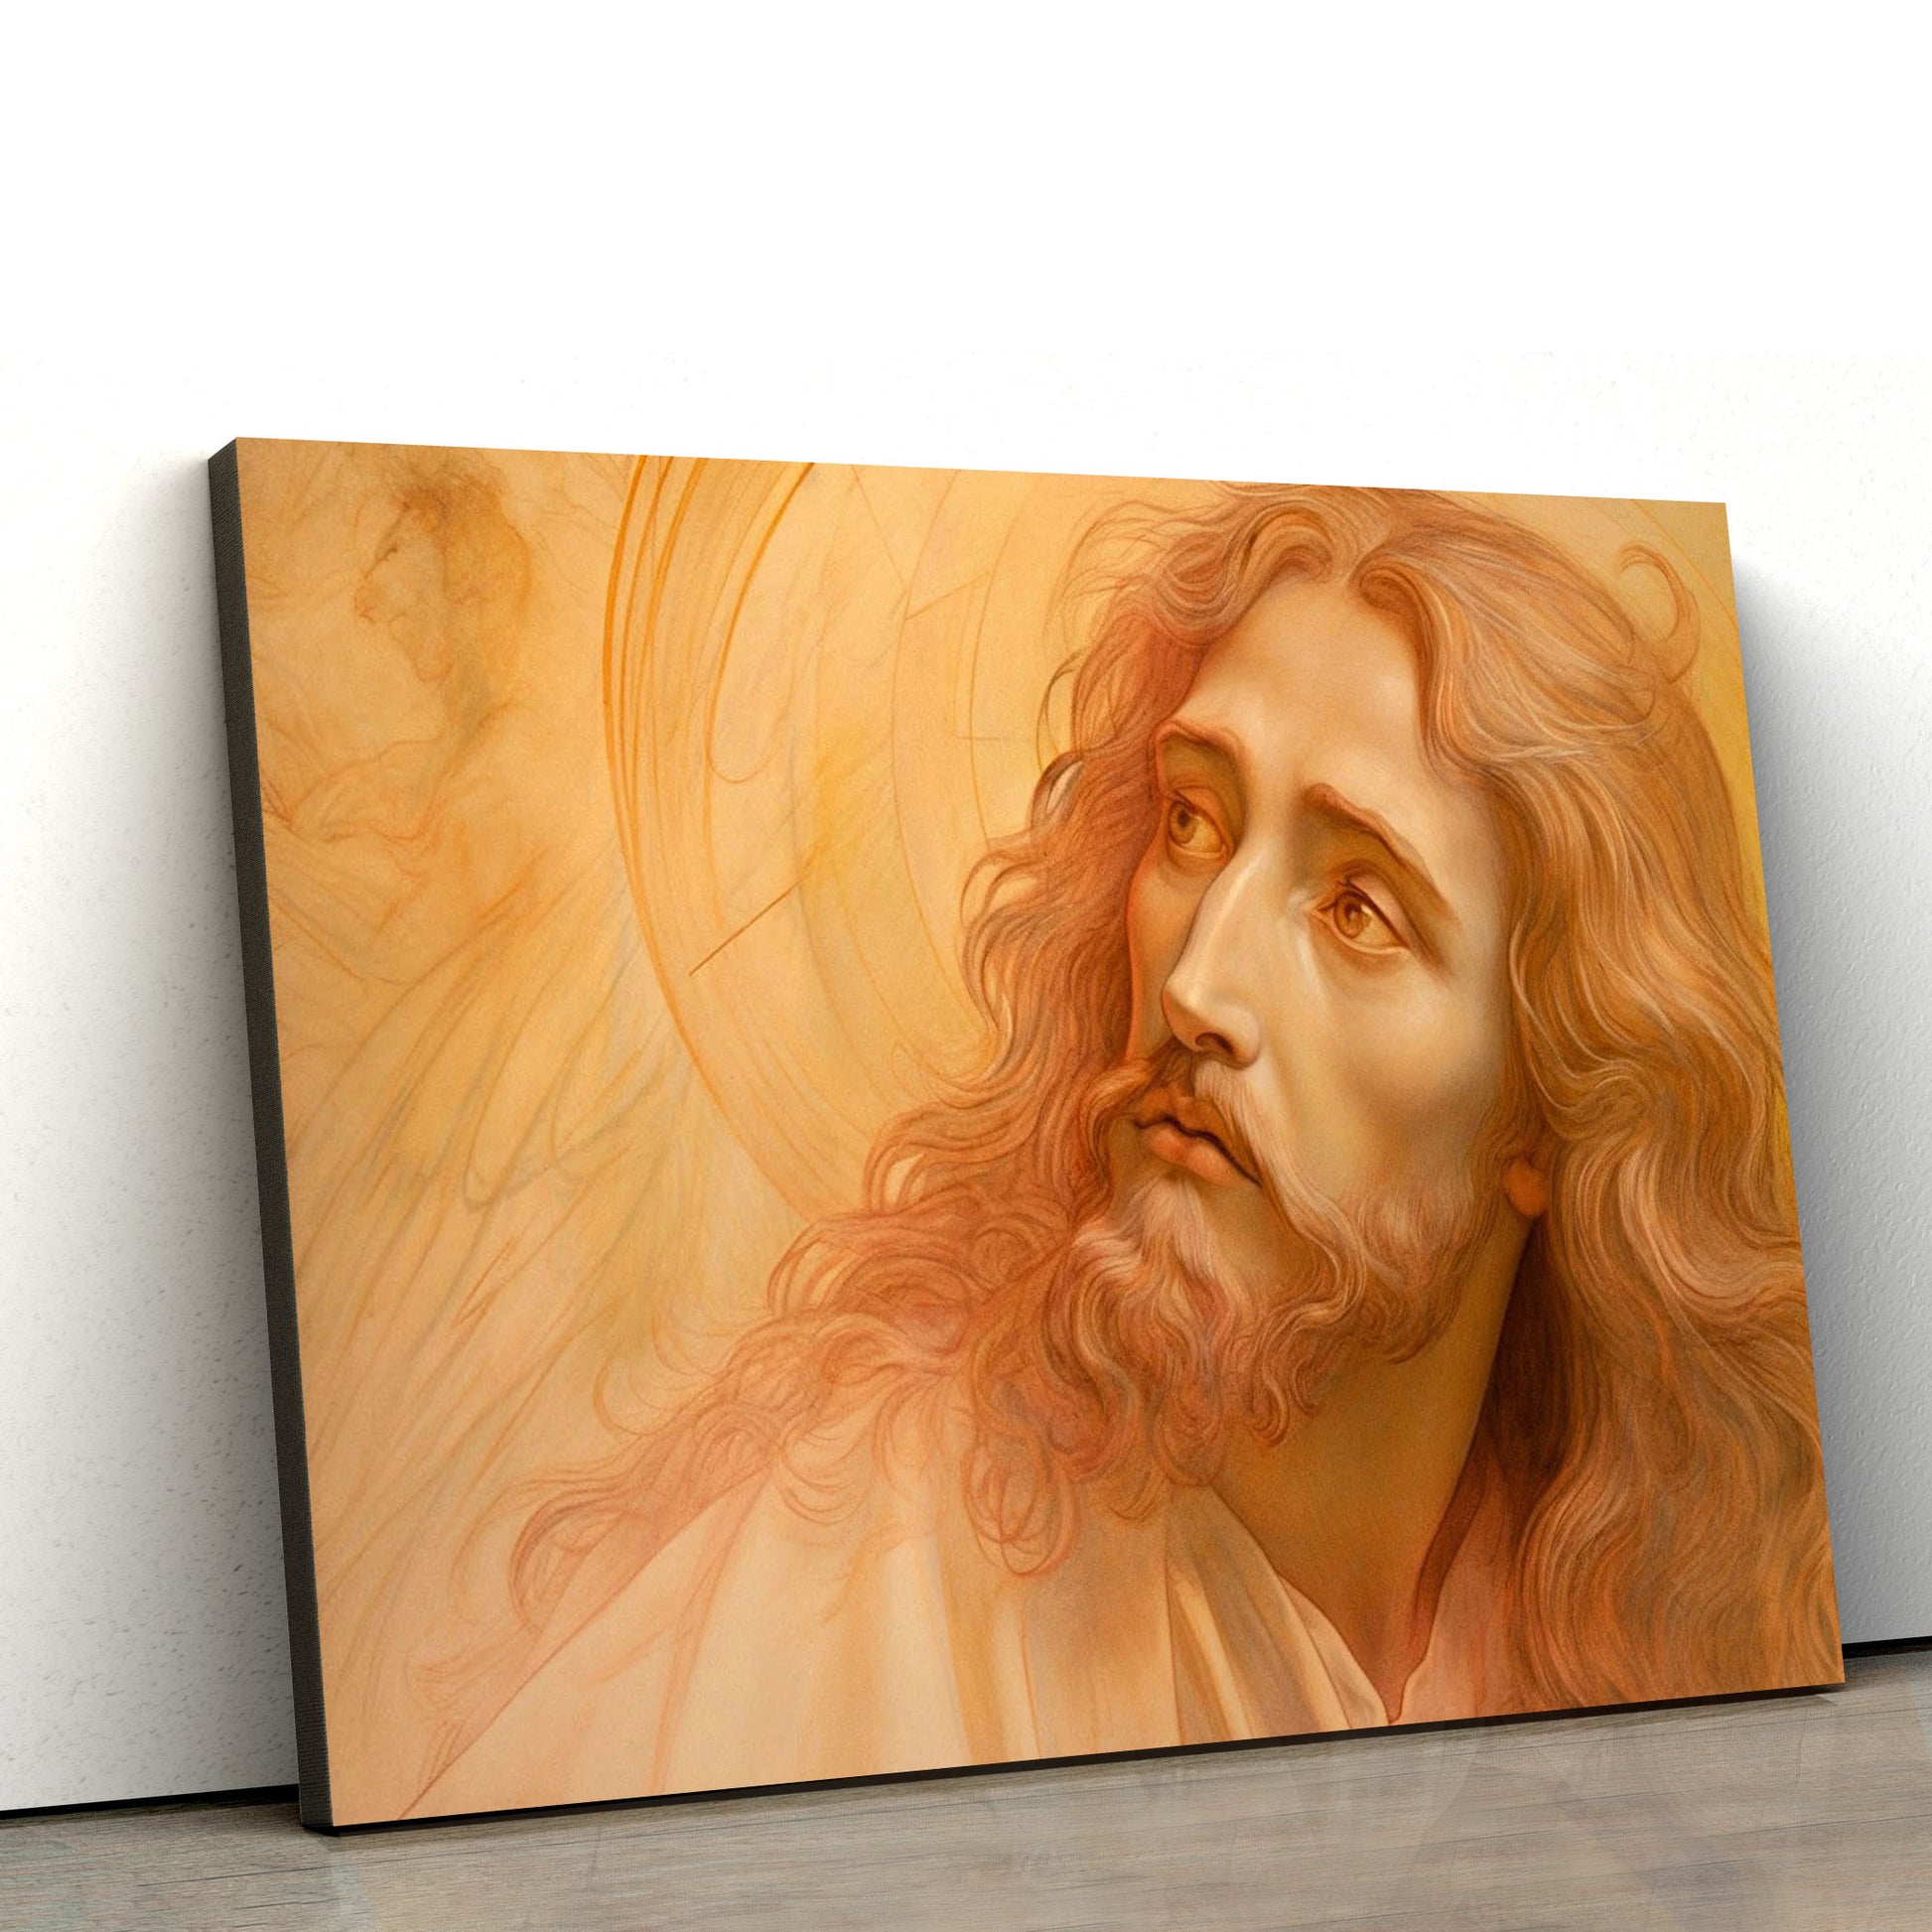 Portrait Of Jesus Christ Art Renaissance - Jesus Canvas Pictures - Christian Wall Art